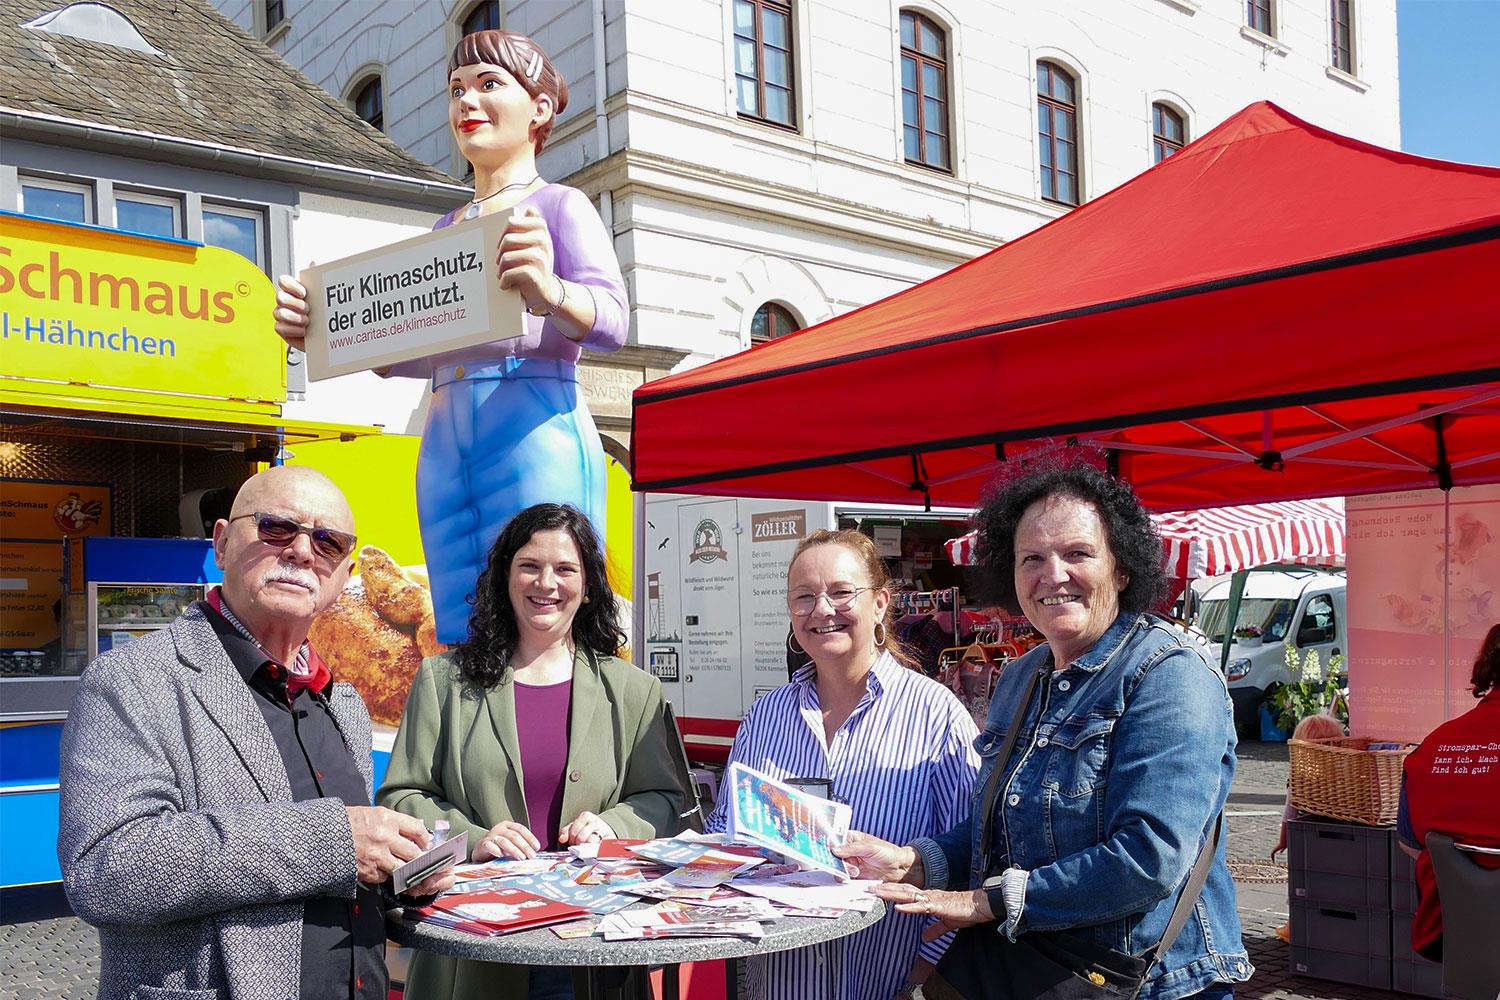 Die Jenny-Statue steht auf einem Wochenmarkt in Koblenz. Im Vordergrund unterhalten sich vier Personen.